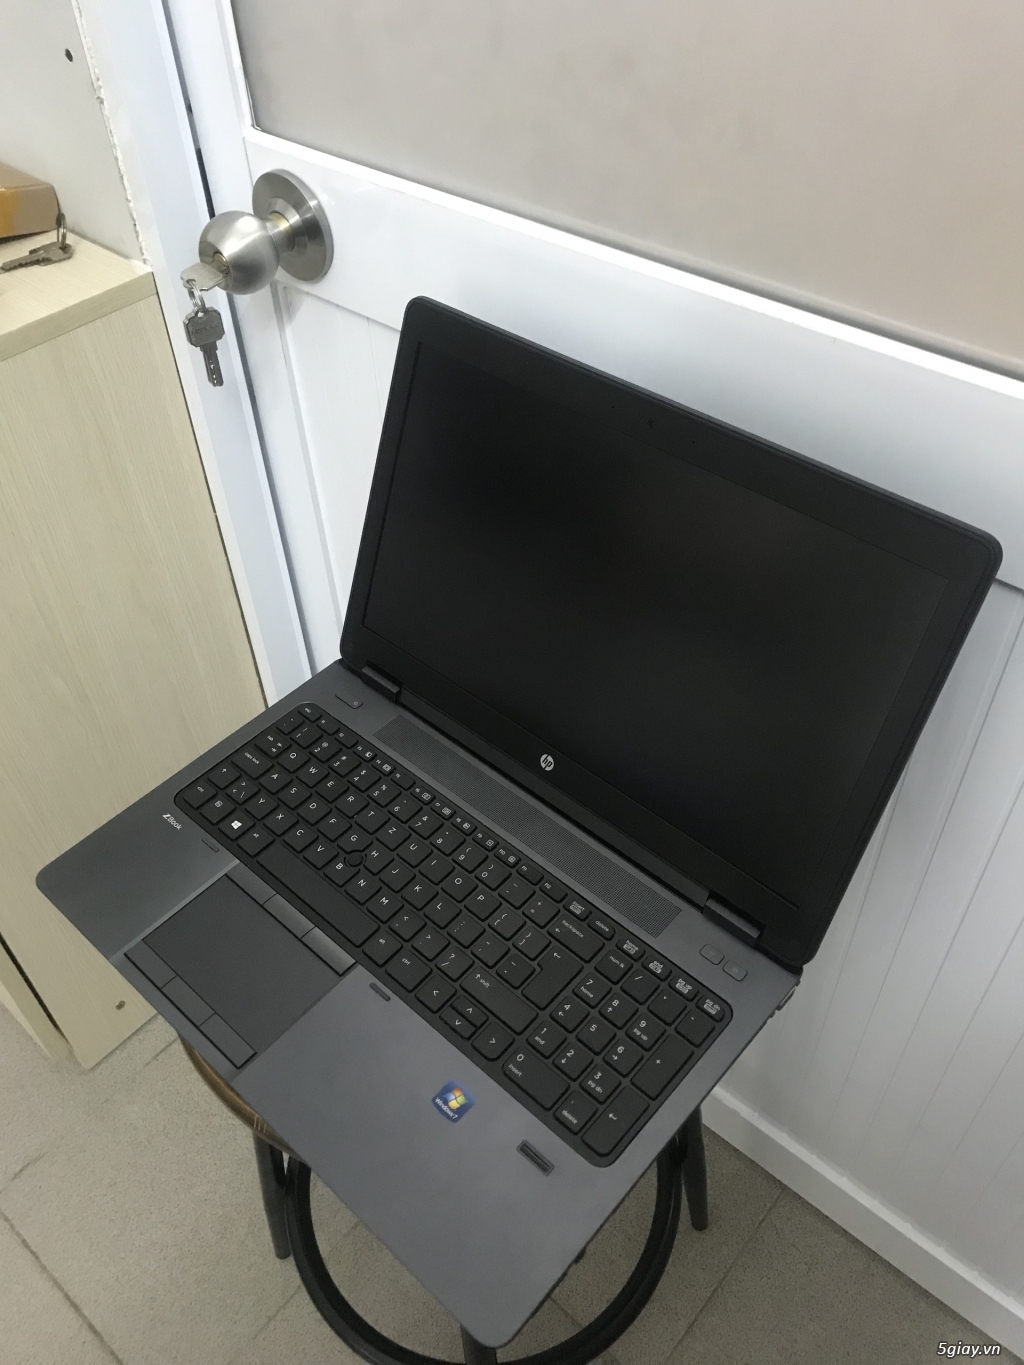 HP ZBook 15 (15.6” IPS FHD, Core i7 4810MQ, 8 GB Ram, 256 GB SSD)